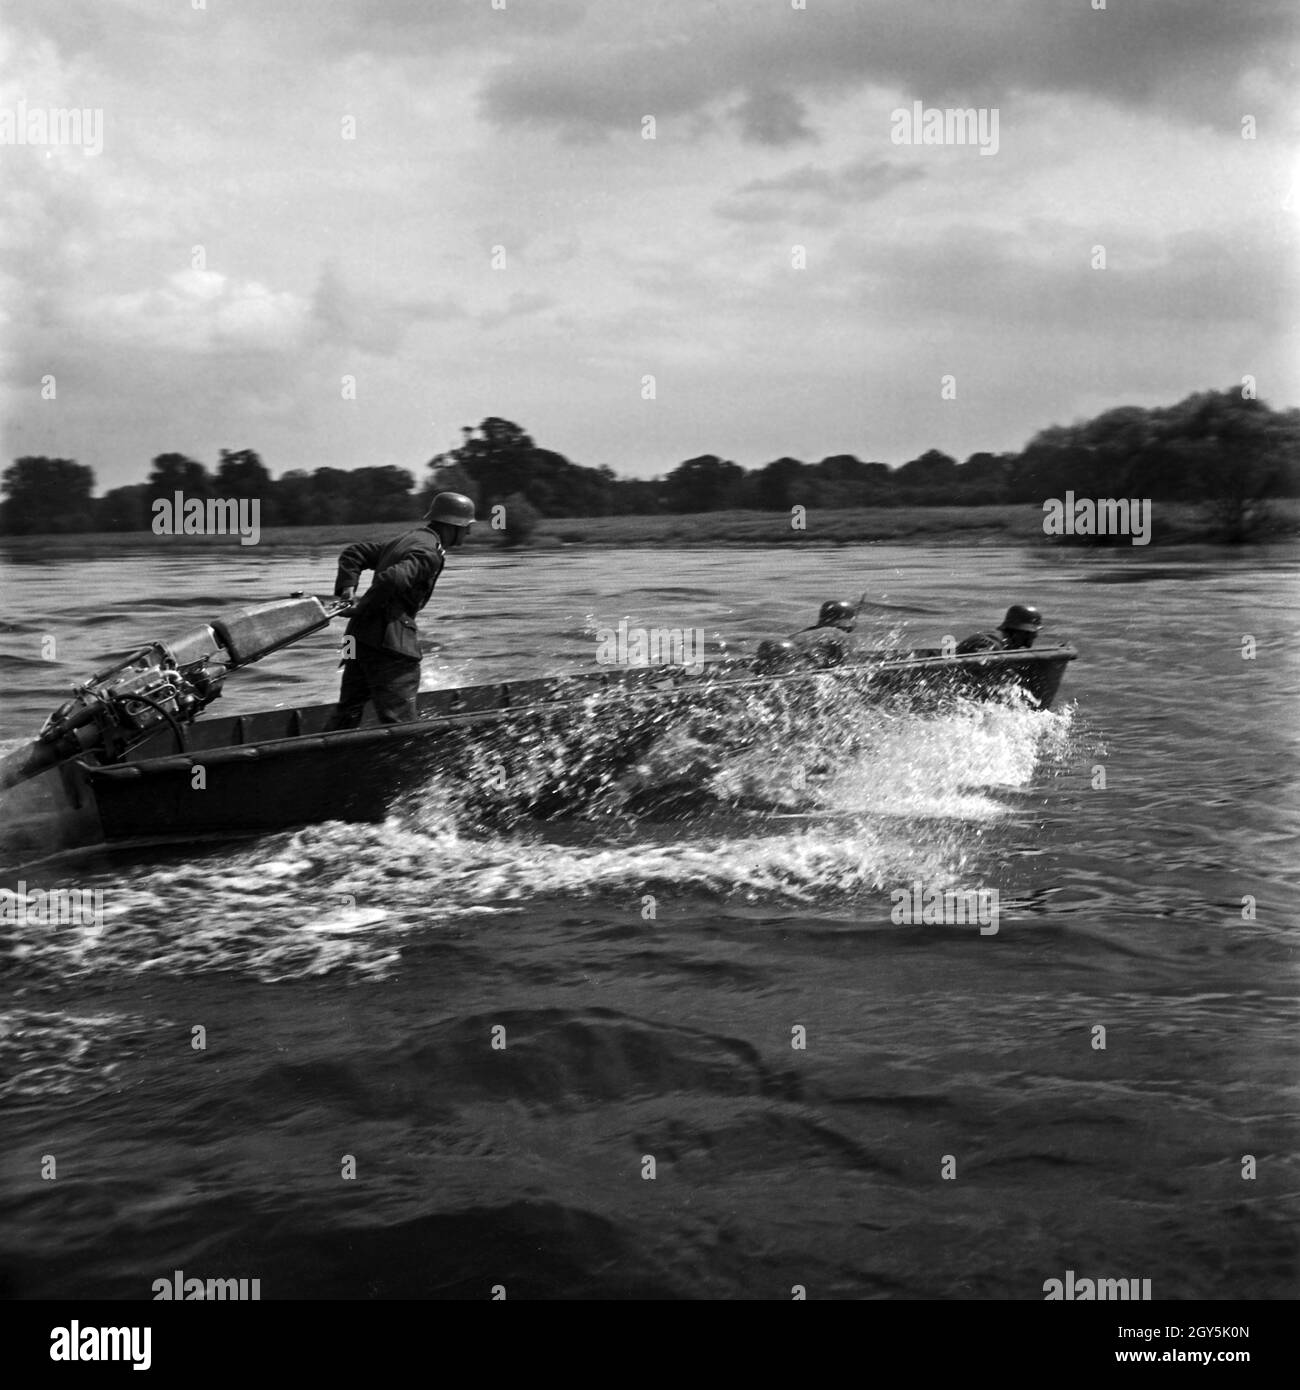 Original-Unterschrift : Sturmboote überqueren einen Fluß, Deutschland 1940er Jahre. Des bateaux d'assaut traversant une rivière, l'Allemagne des années 40. Banque D'Images